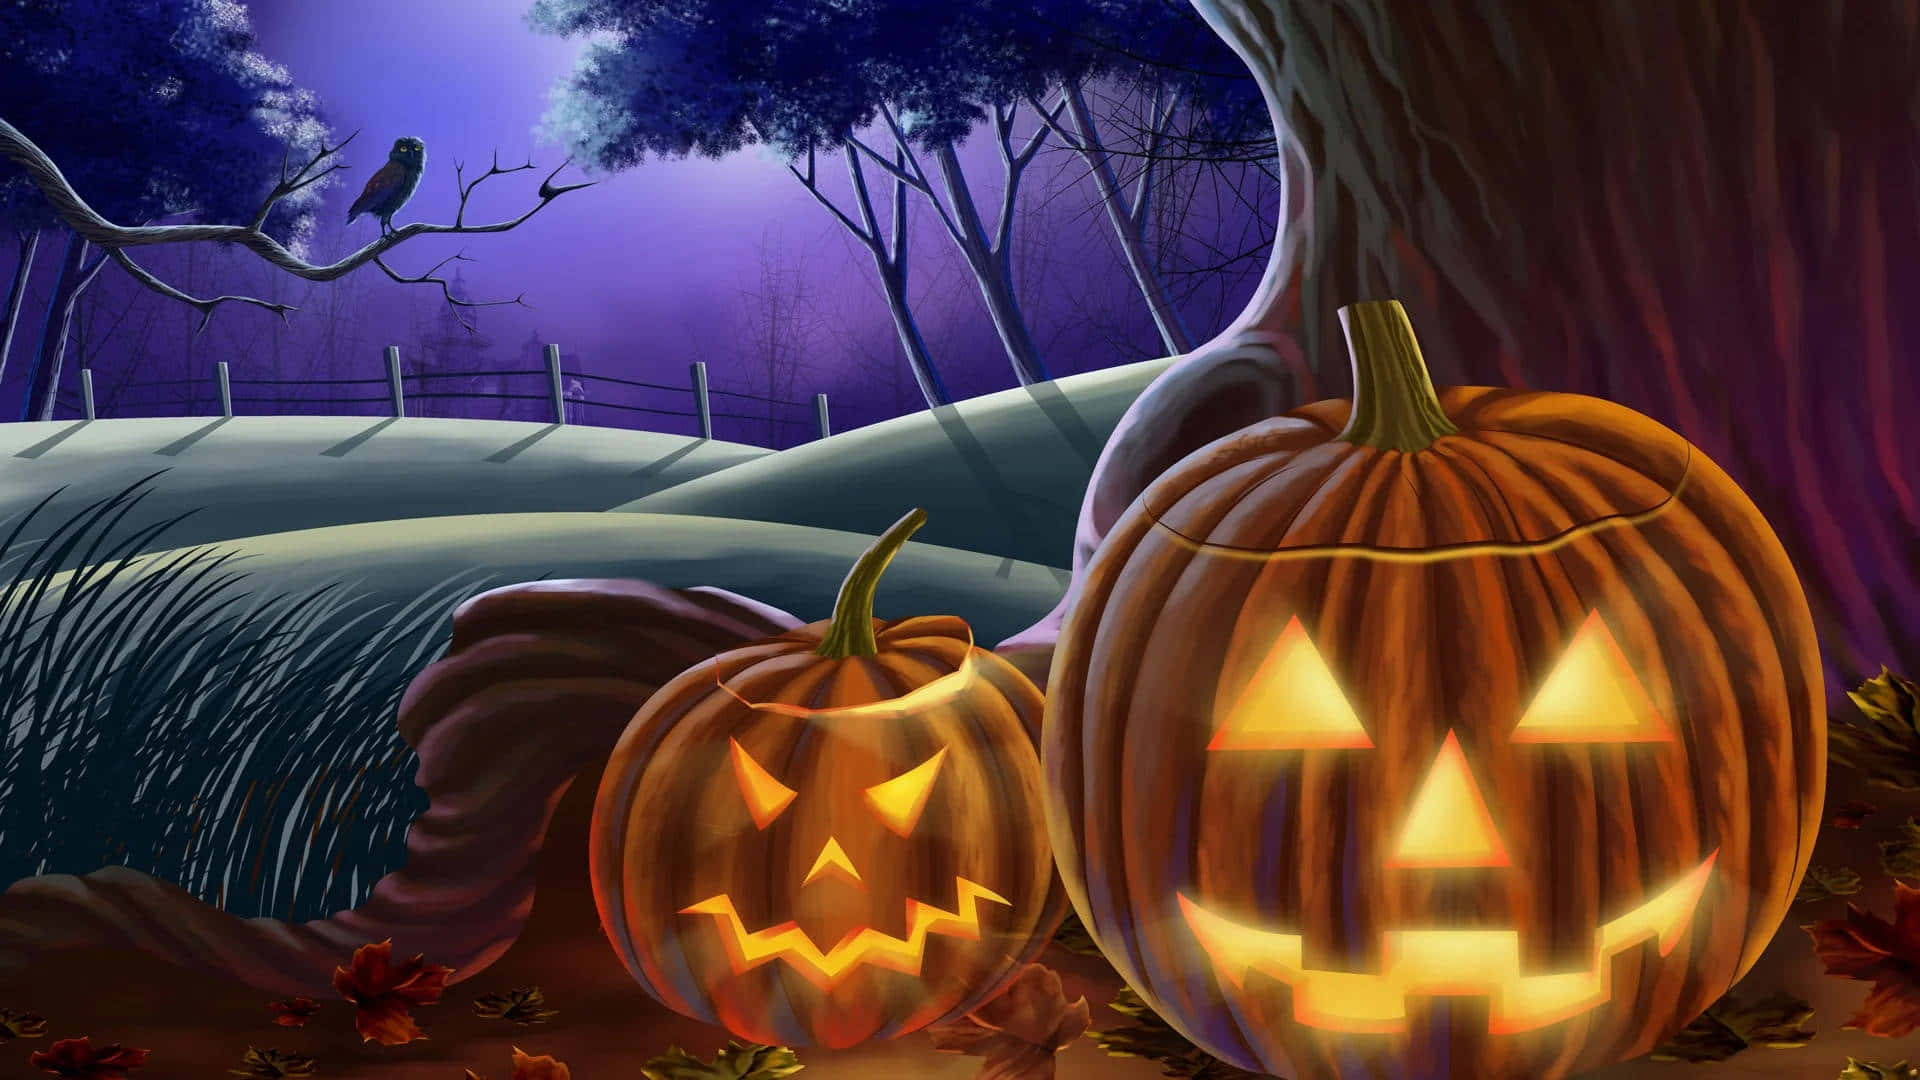 Spooky Halloween Pumpkins Night Scene Wallpaper